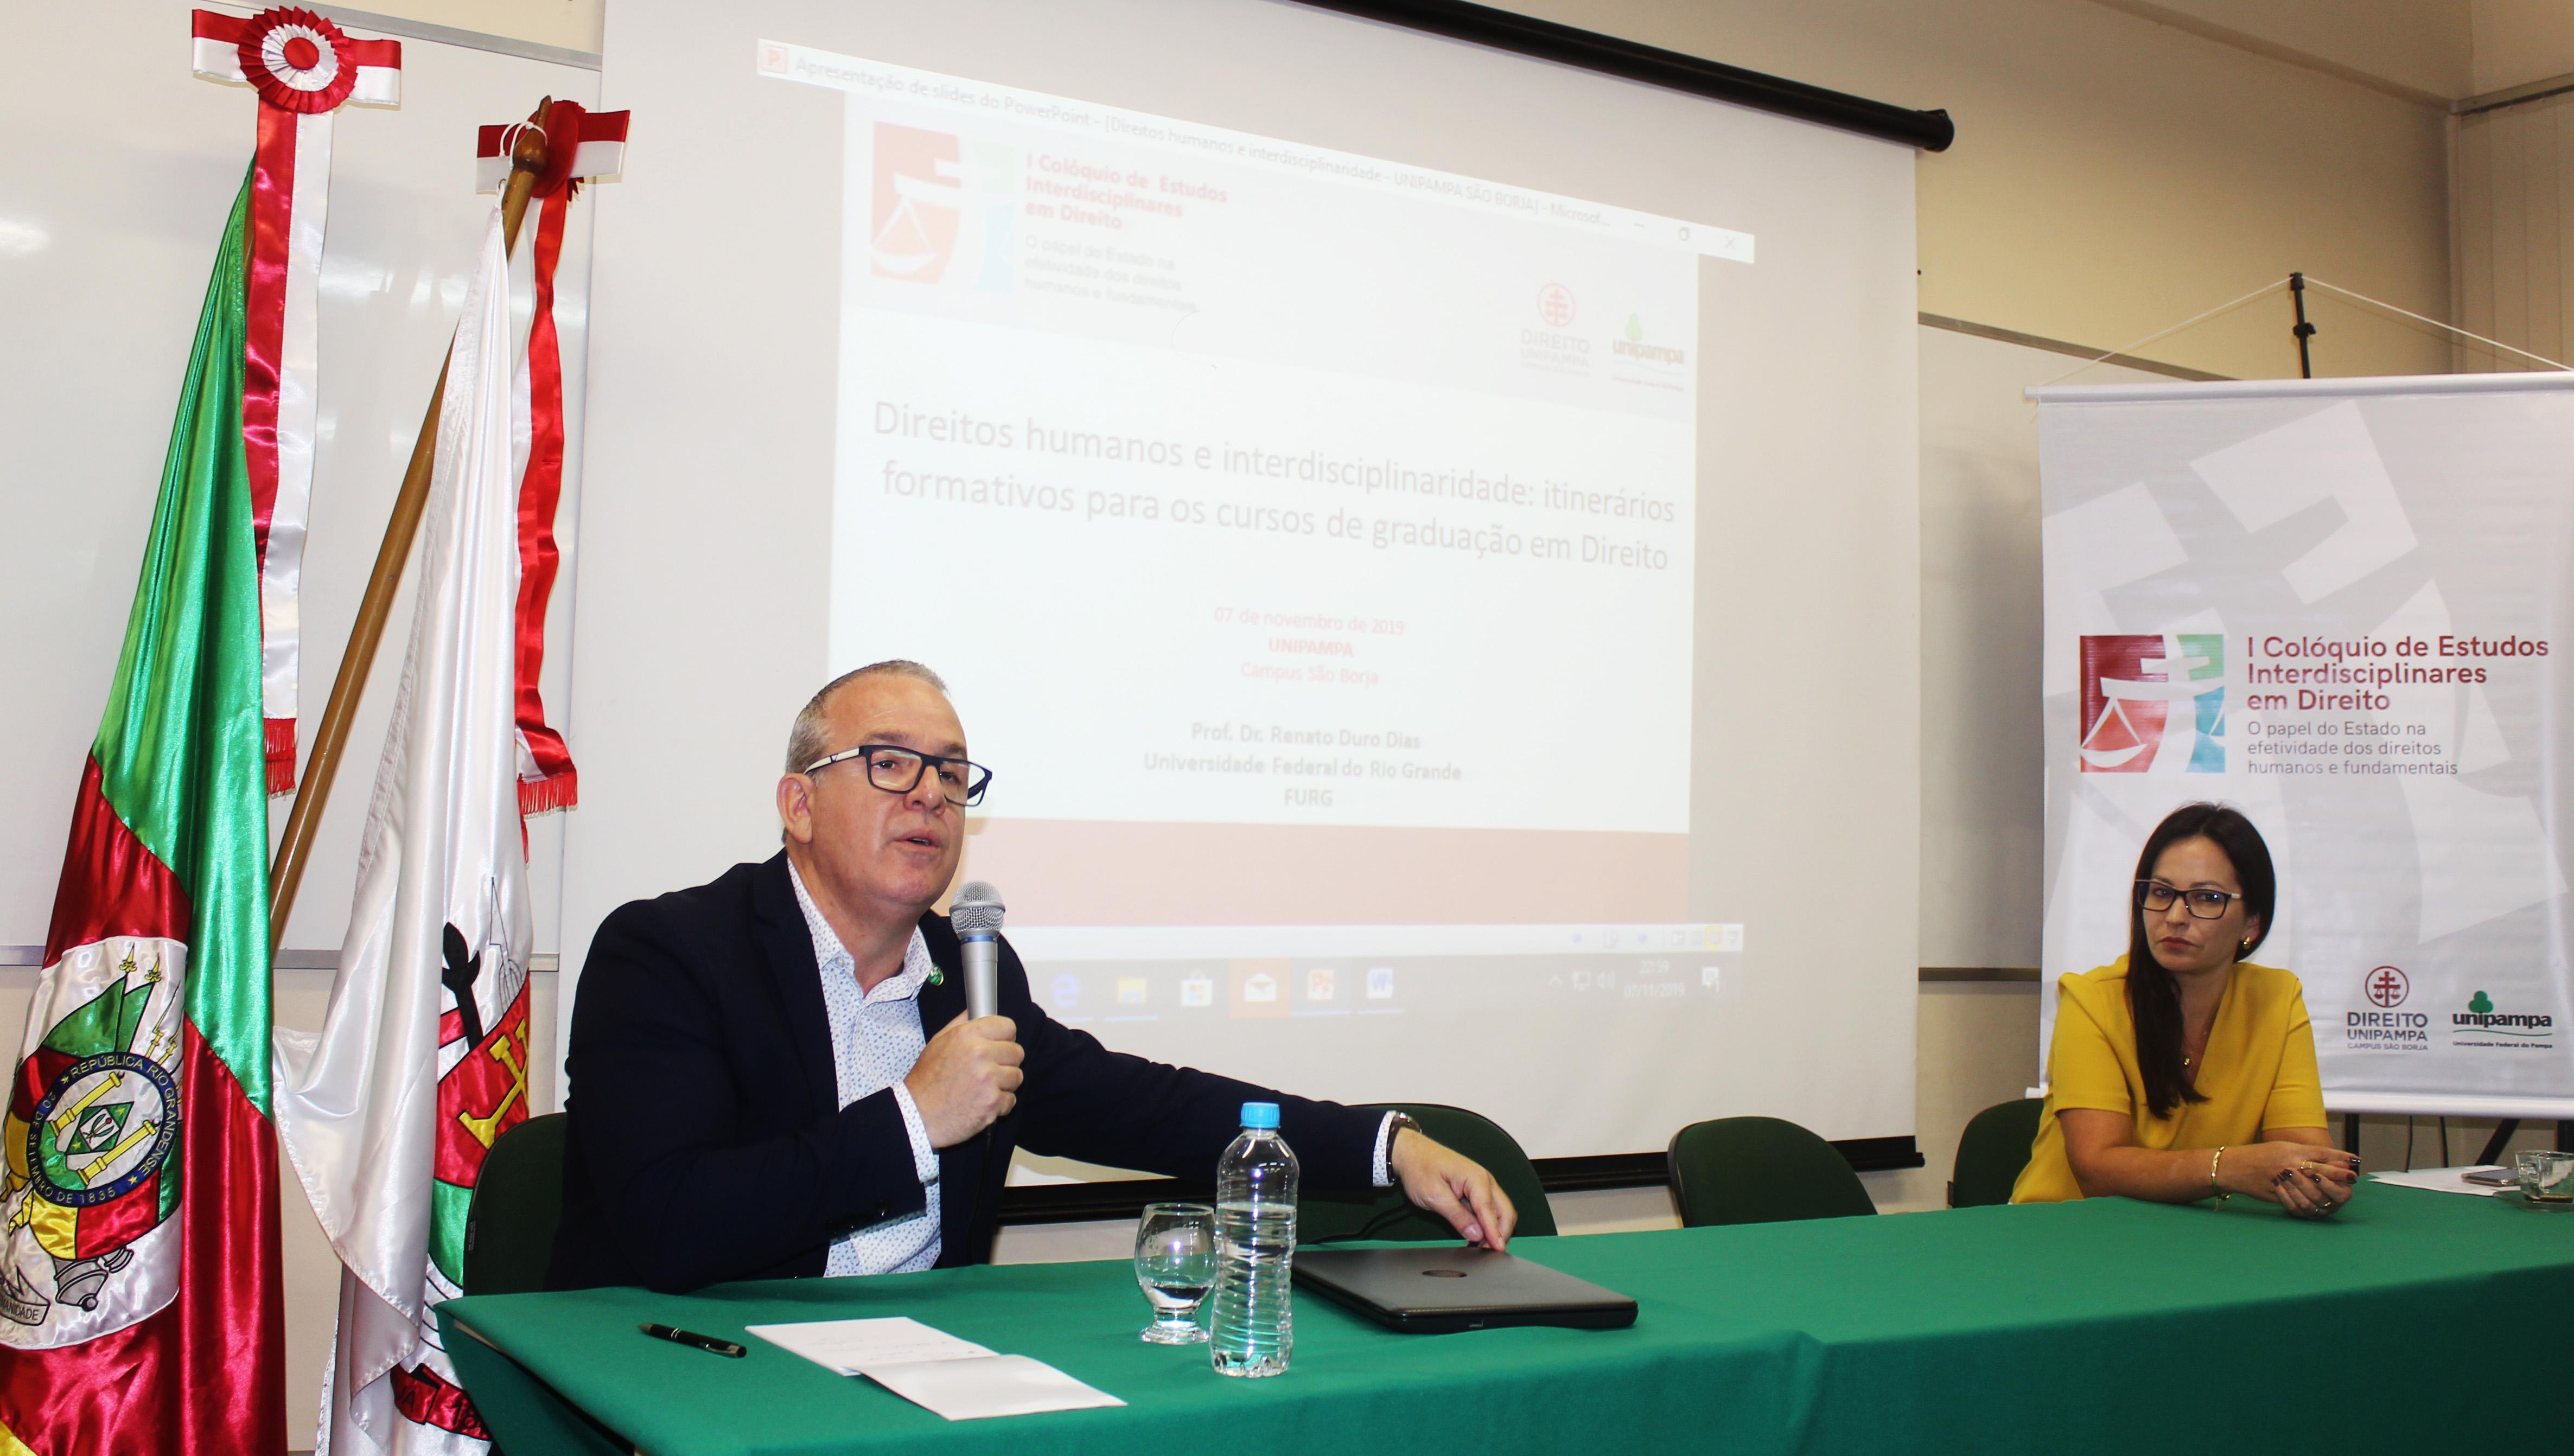 Imagem do professor Renato Duro Dias proferido sua palestra. Na mesa, sentada à sua direita, está a professora Lisianne Ceolin.